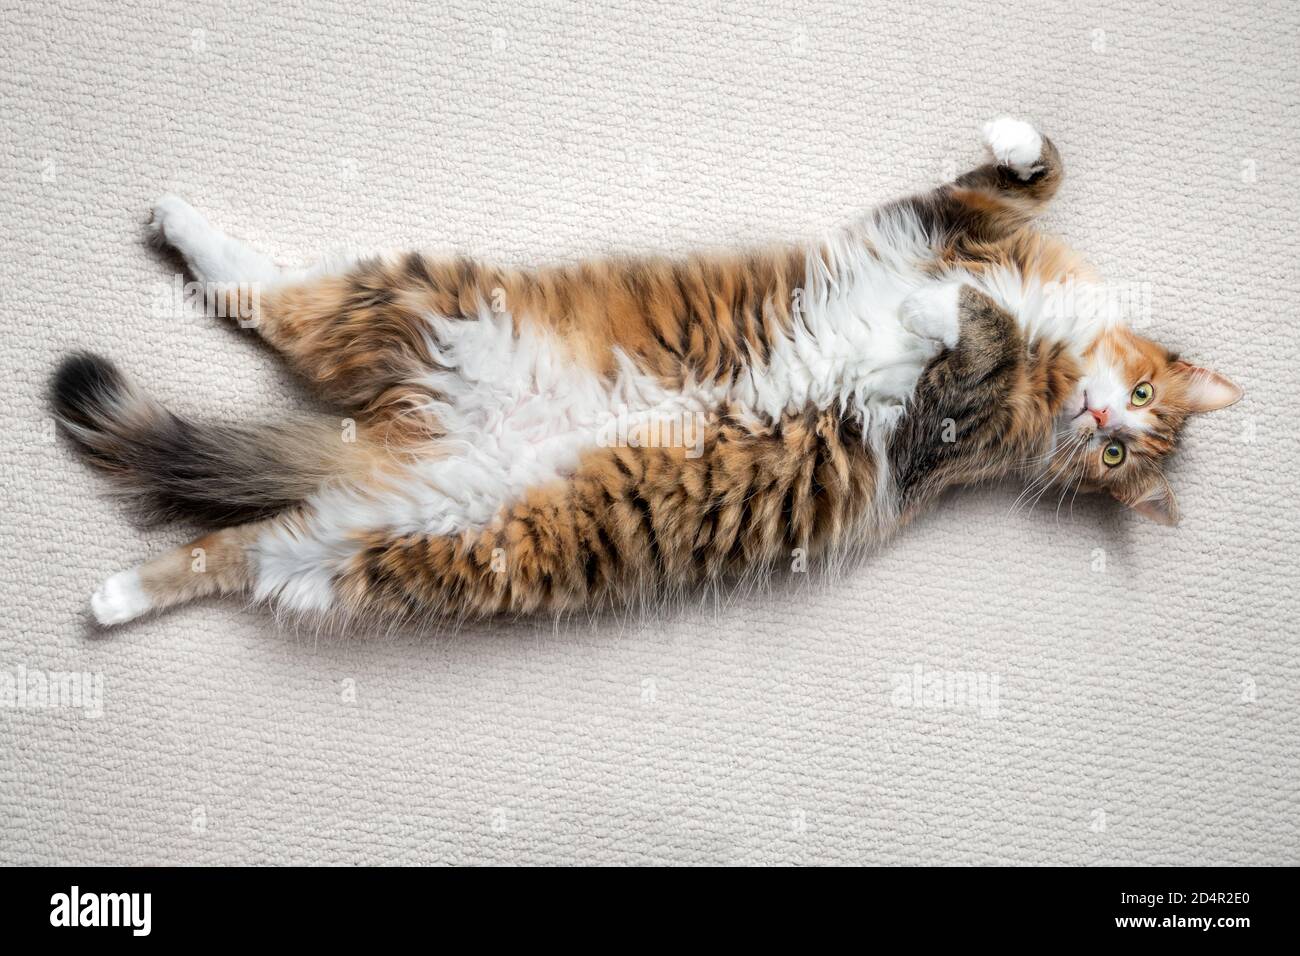 Die Katze liegt kopfüber und streckt sich aus. Eine entspannte und entspannte 1 Jahr alte Kätzin mit freiliegendem Bauch. Konzept für entspannende oder Zen-Momente. Stockfoto